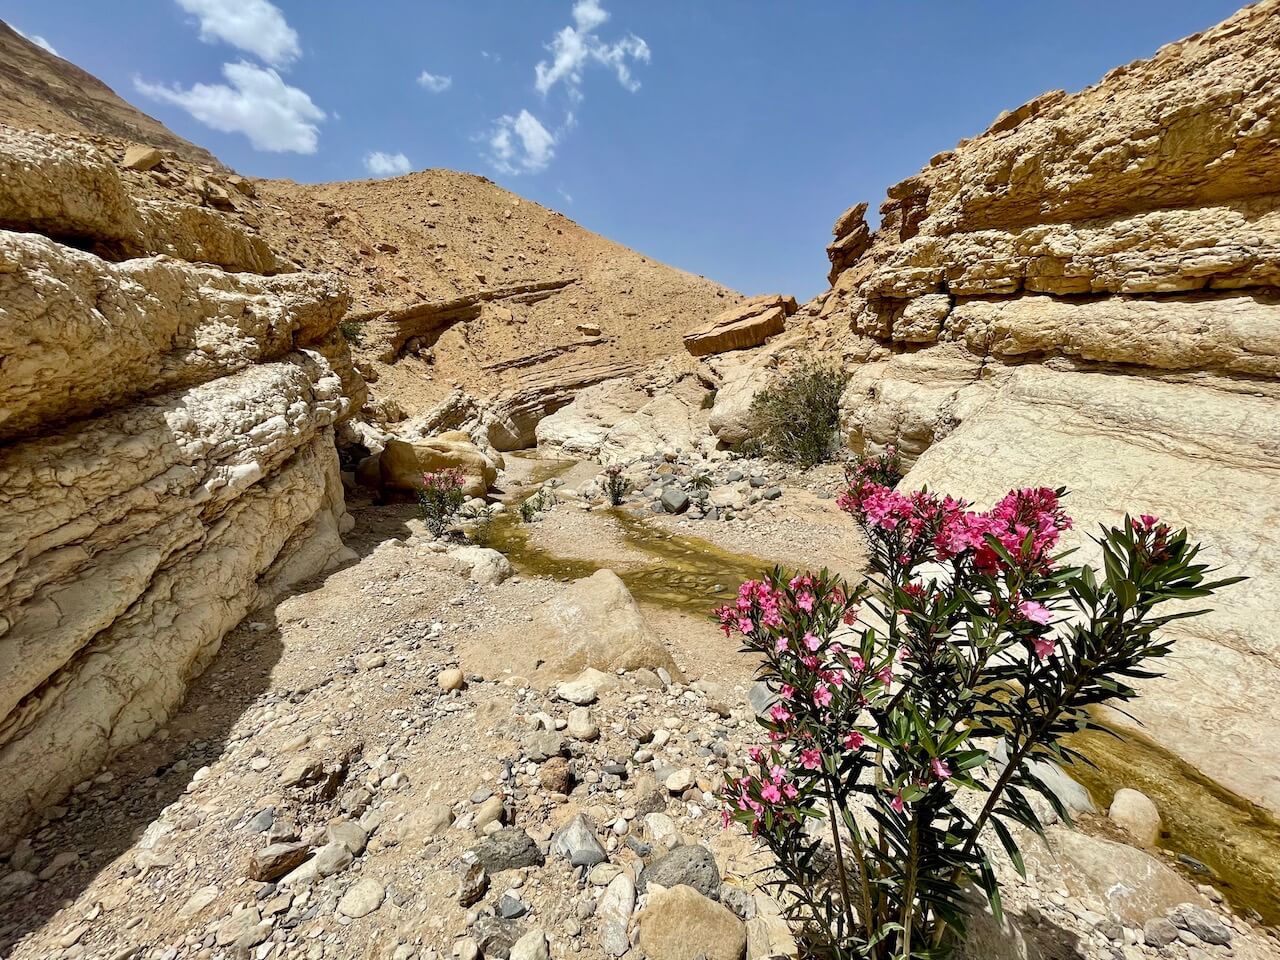 Jordan, Wadi Ghuweir - Hiking the Wadi Ghuweir Trail